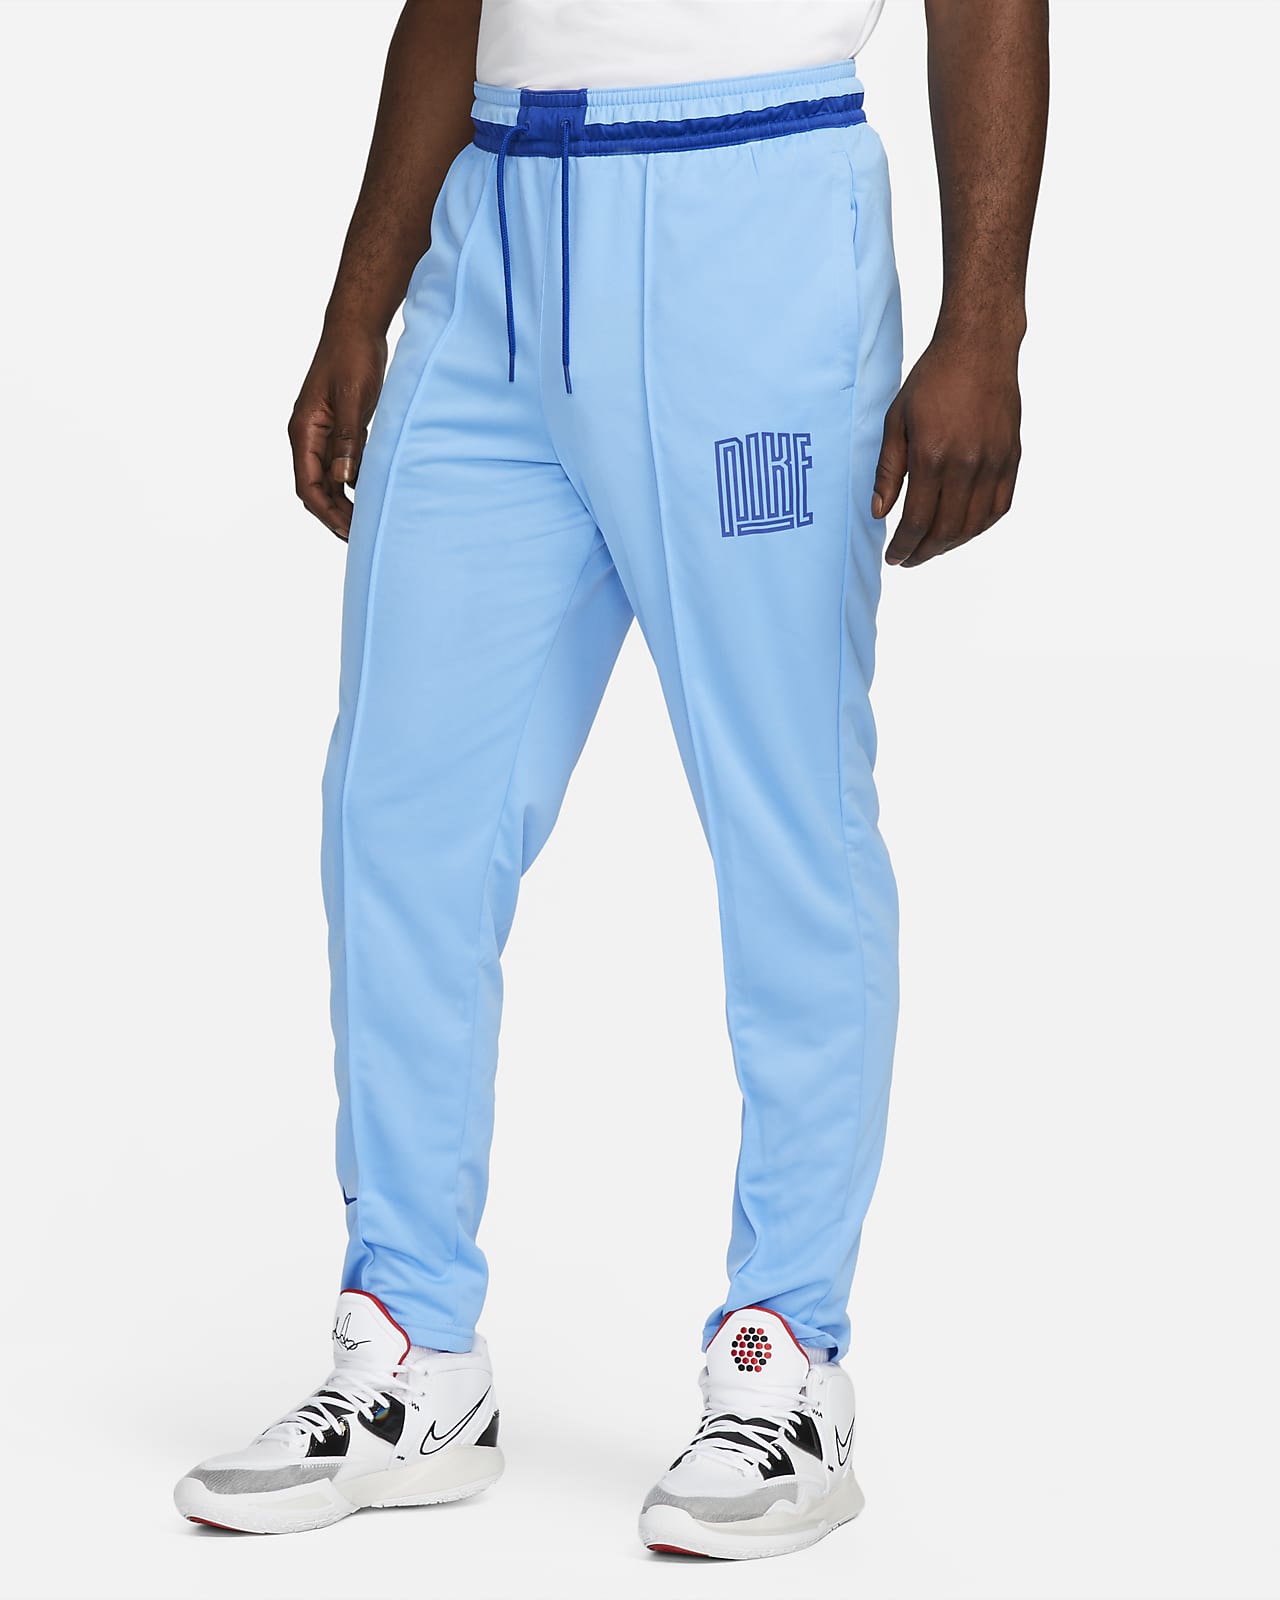 Pantalones de básquetbol para hombre Nike Dri-FIT